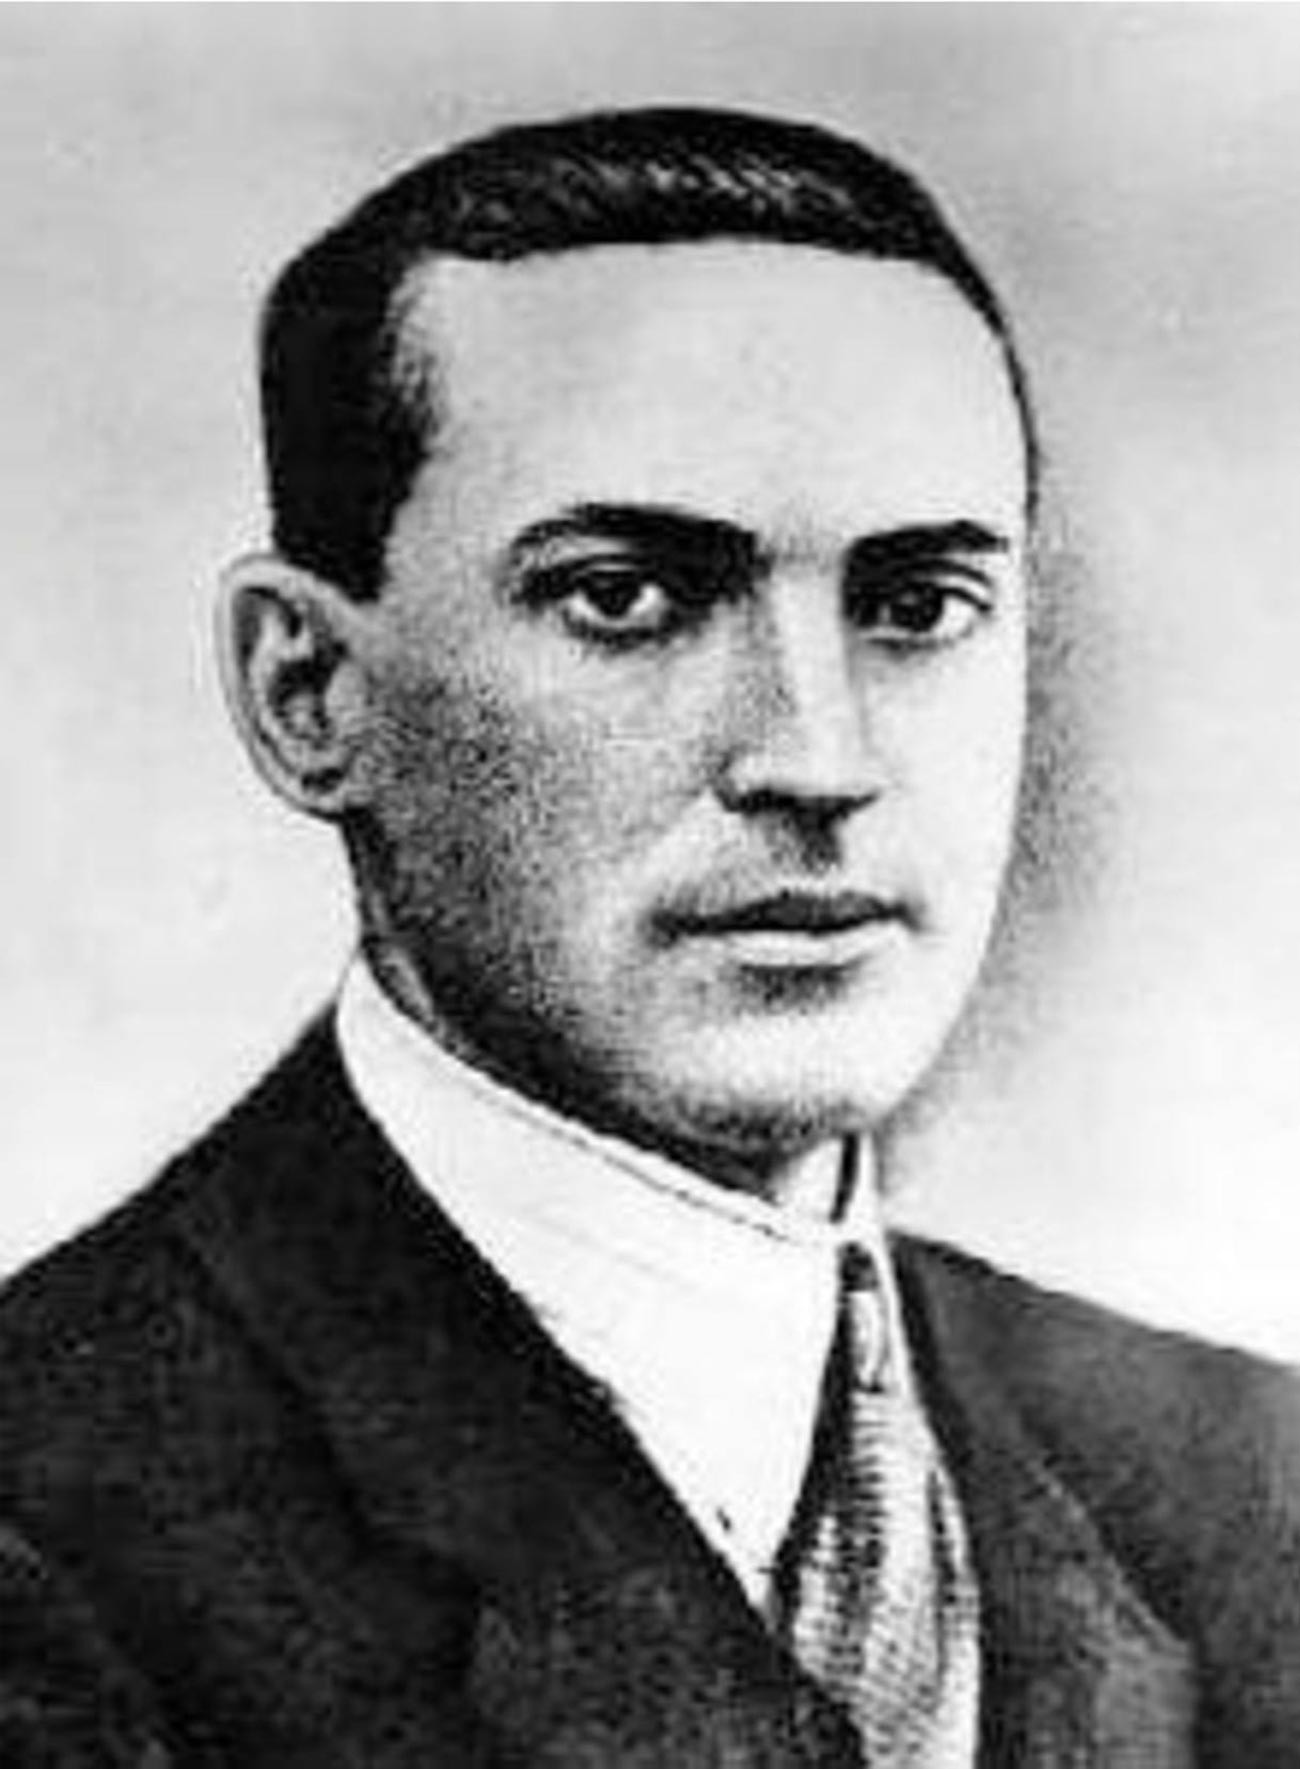 One of the founders of Soviet psychology, Lev Vygotsky.